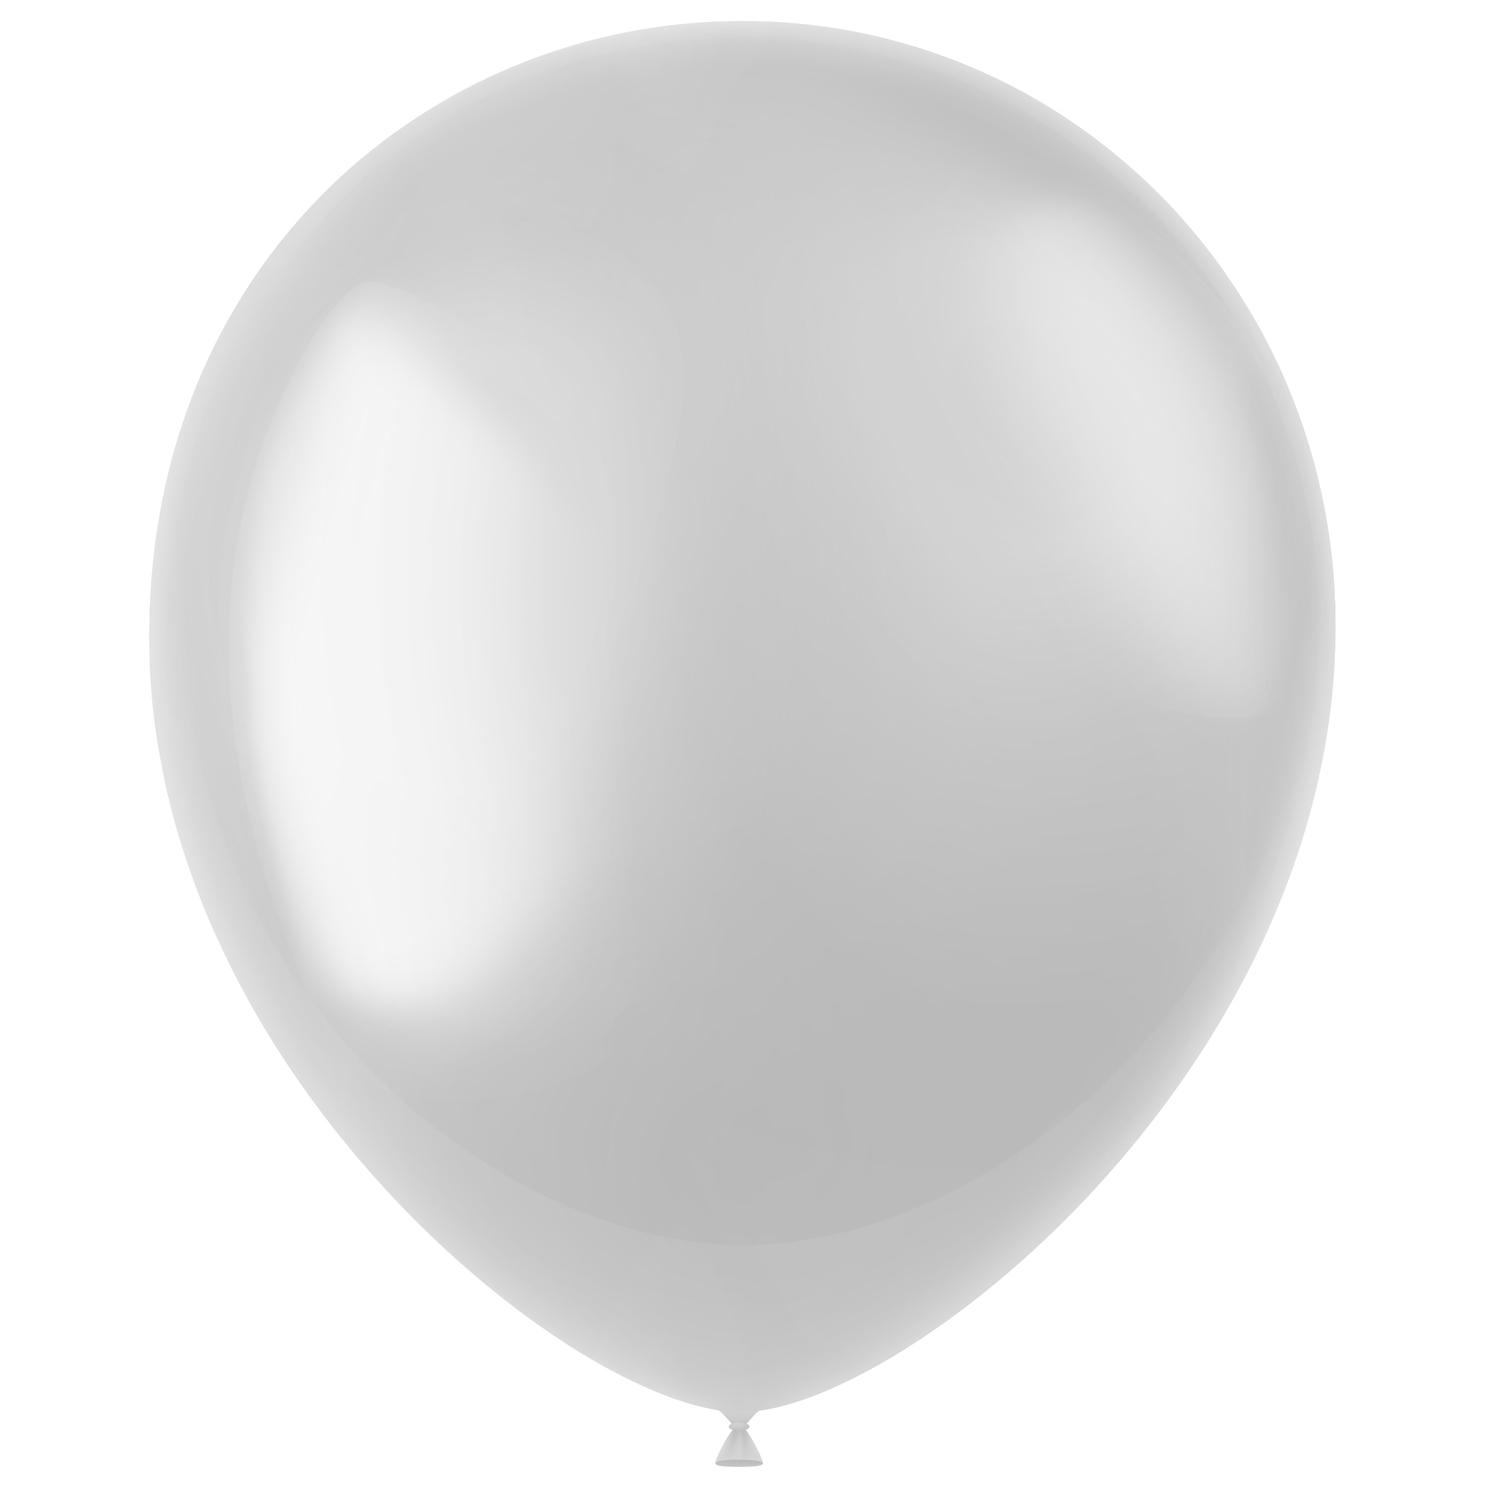 Latex-Luftballons glänzend, 33cm, weiß, 100 Stück, Metallic-Ballons